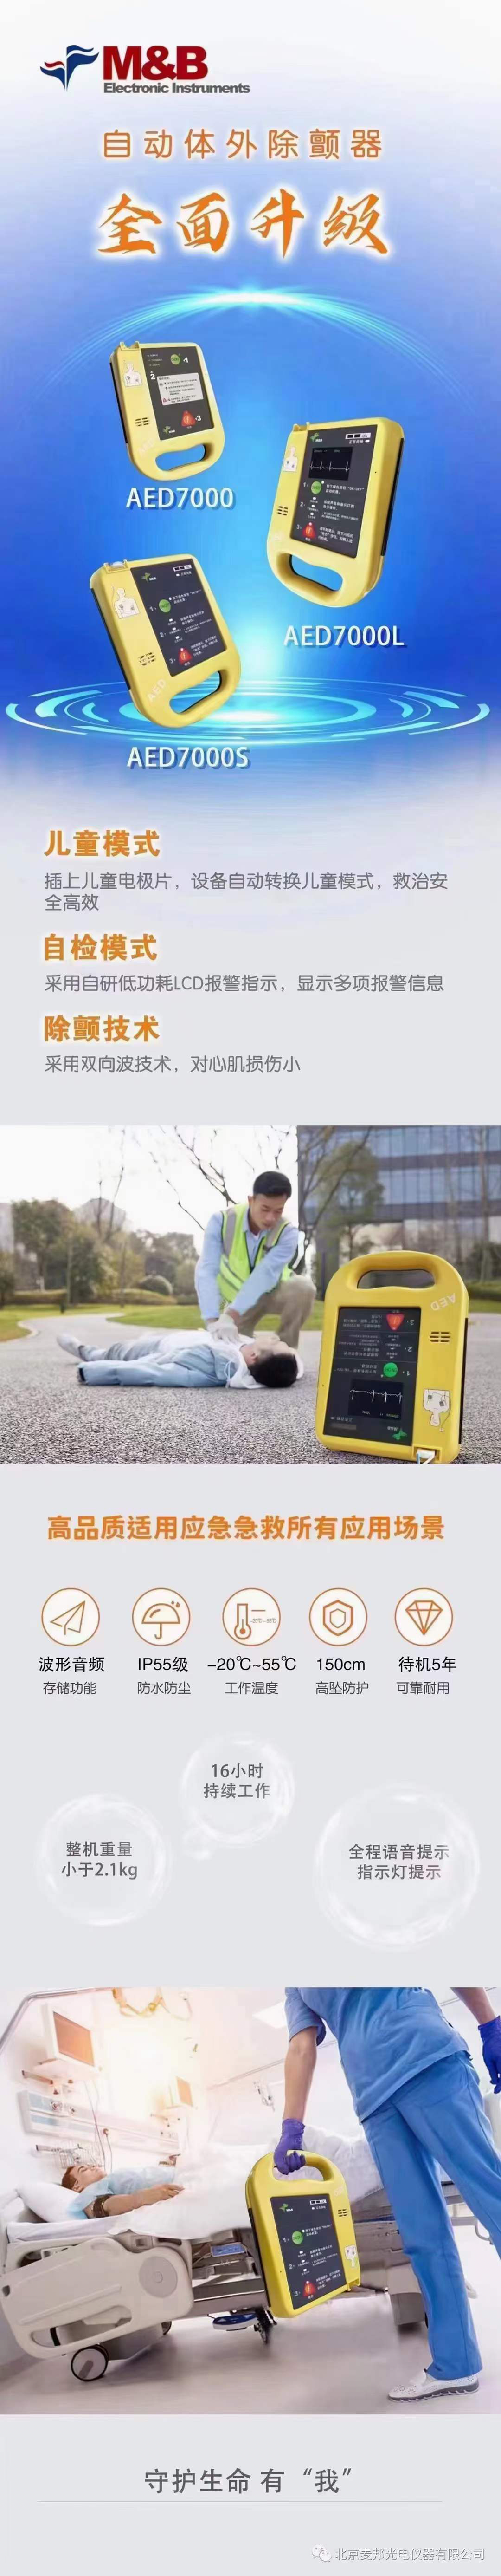 麦邦AED除颤仪 7000S.jpg